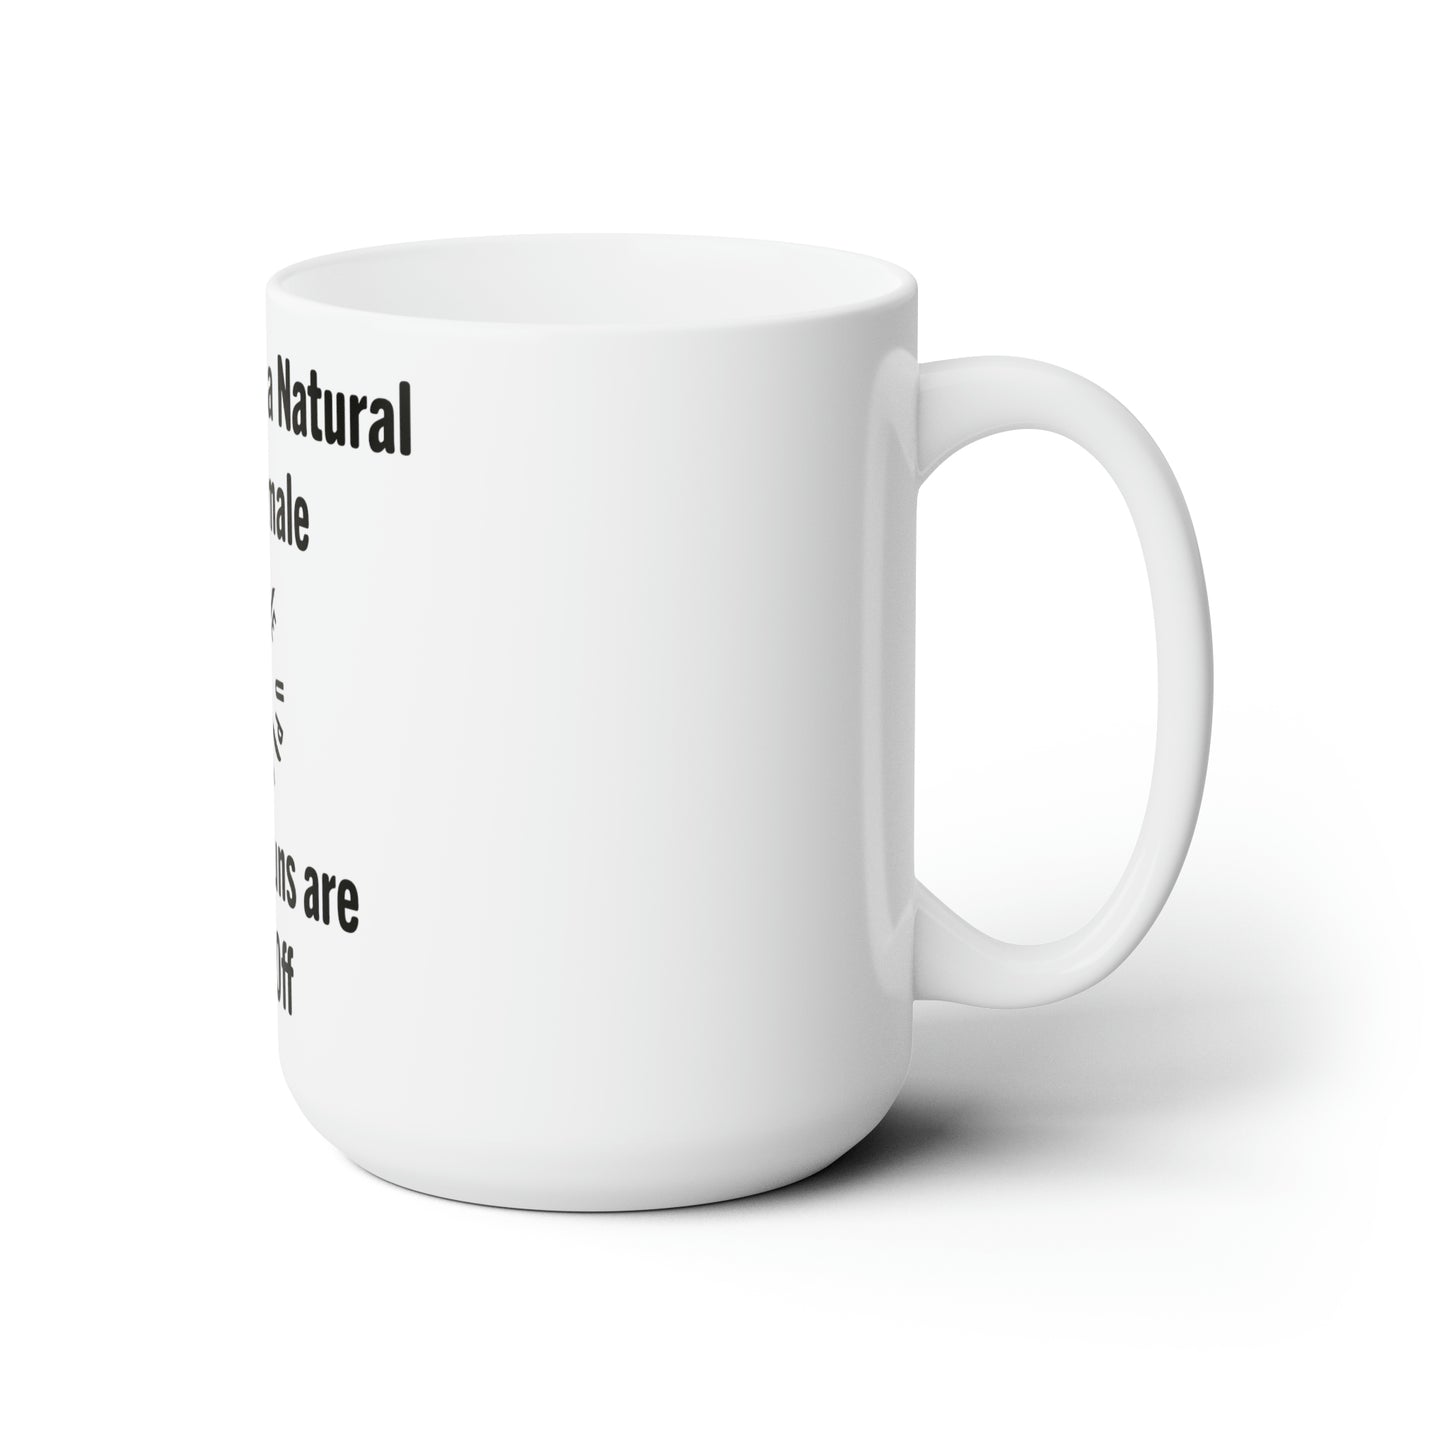 Pro-Noun Mug for Females Ceramic Mug 15oz